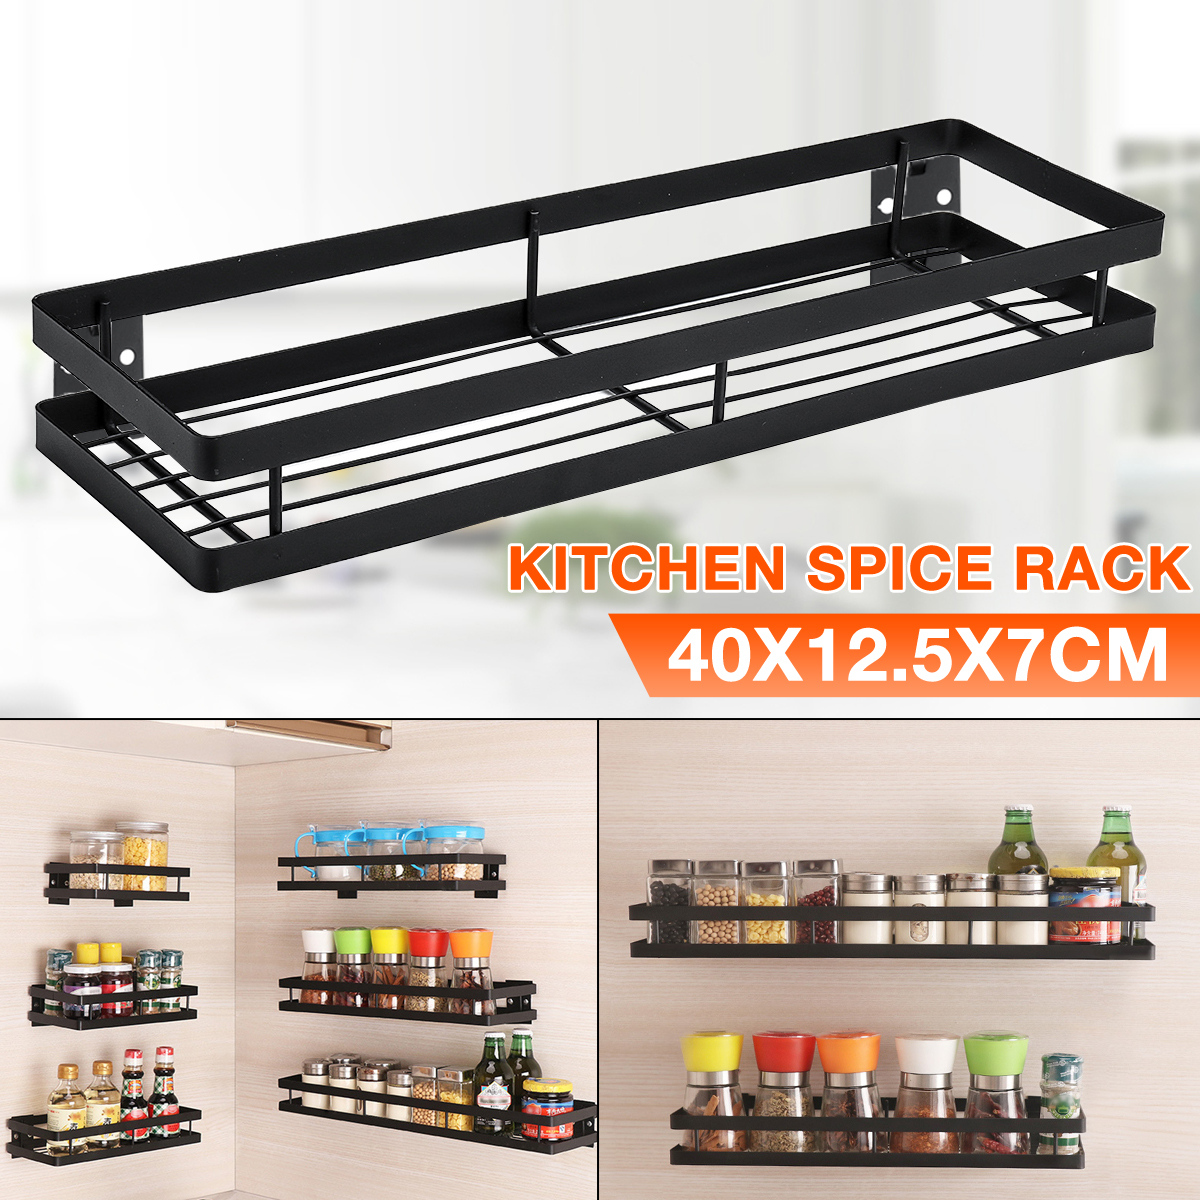 Kitchen-Spice-Rack-Stainless-Steel-Single-Tier-Storage-Shelf-Organizer-Holder-1643286-1